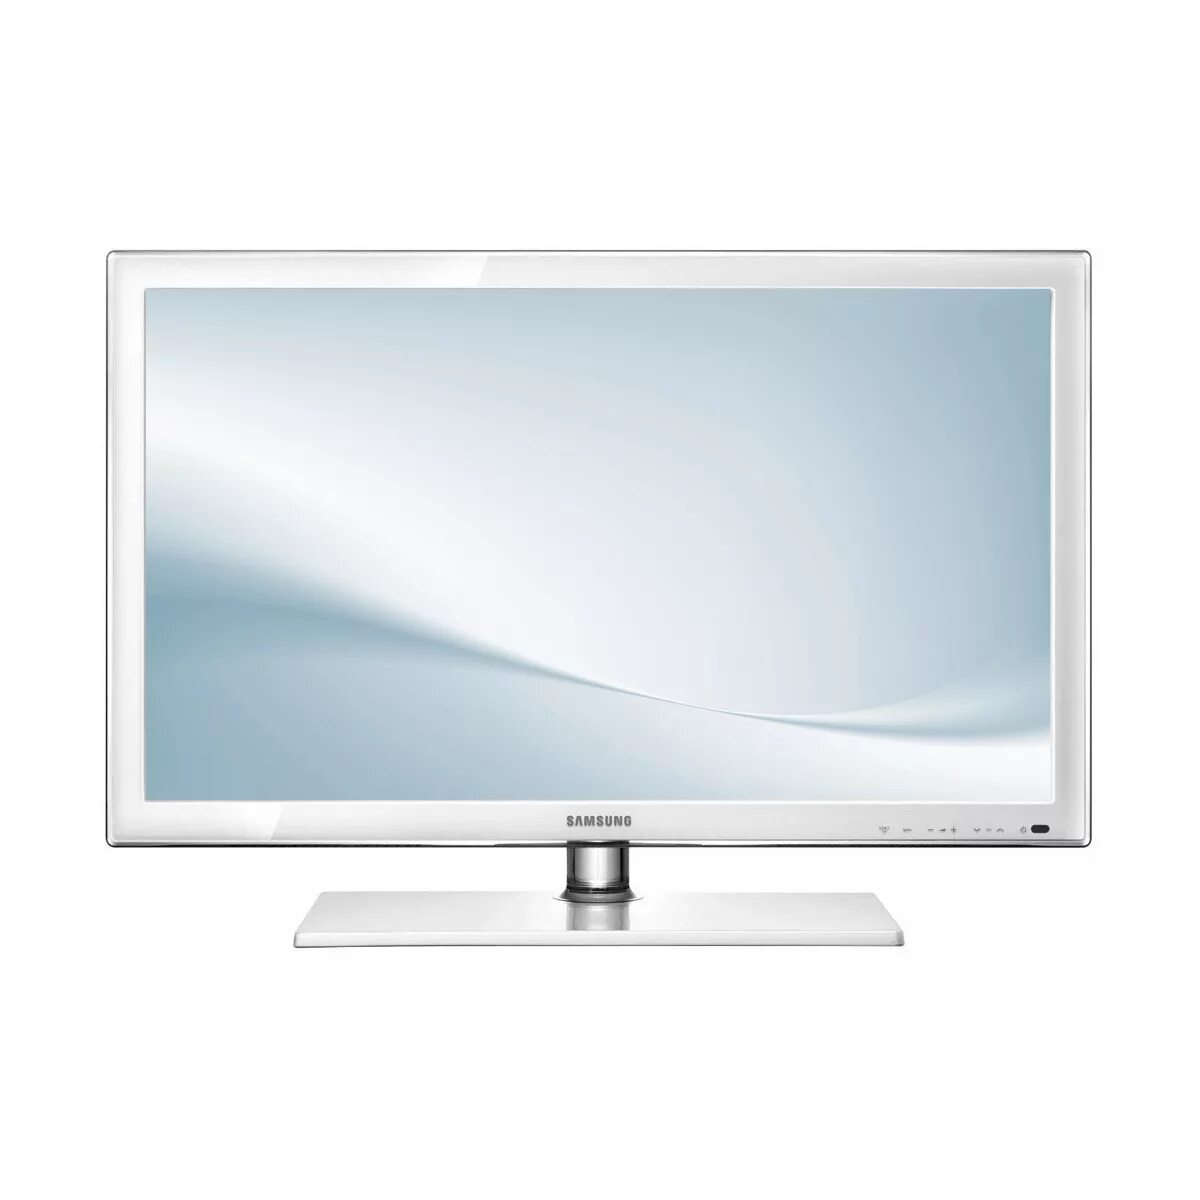 Куплю белый телевизор lg. Телевизор самсунг ue22d5010. Телевизор Samsung ue22d5010 22". Белый телевизор самсунг 32 дюйма Smart. Самсунг LCD 24 дюйма белый.